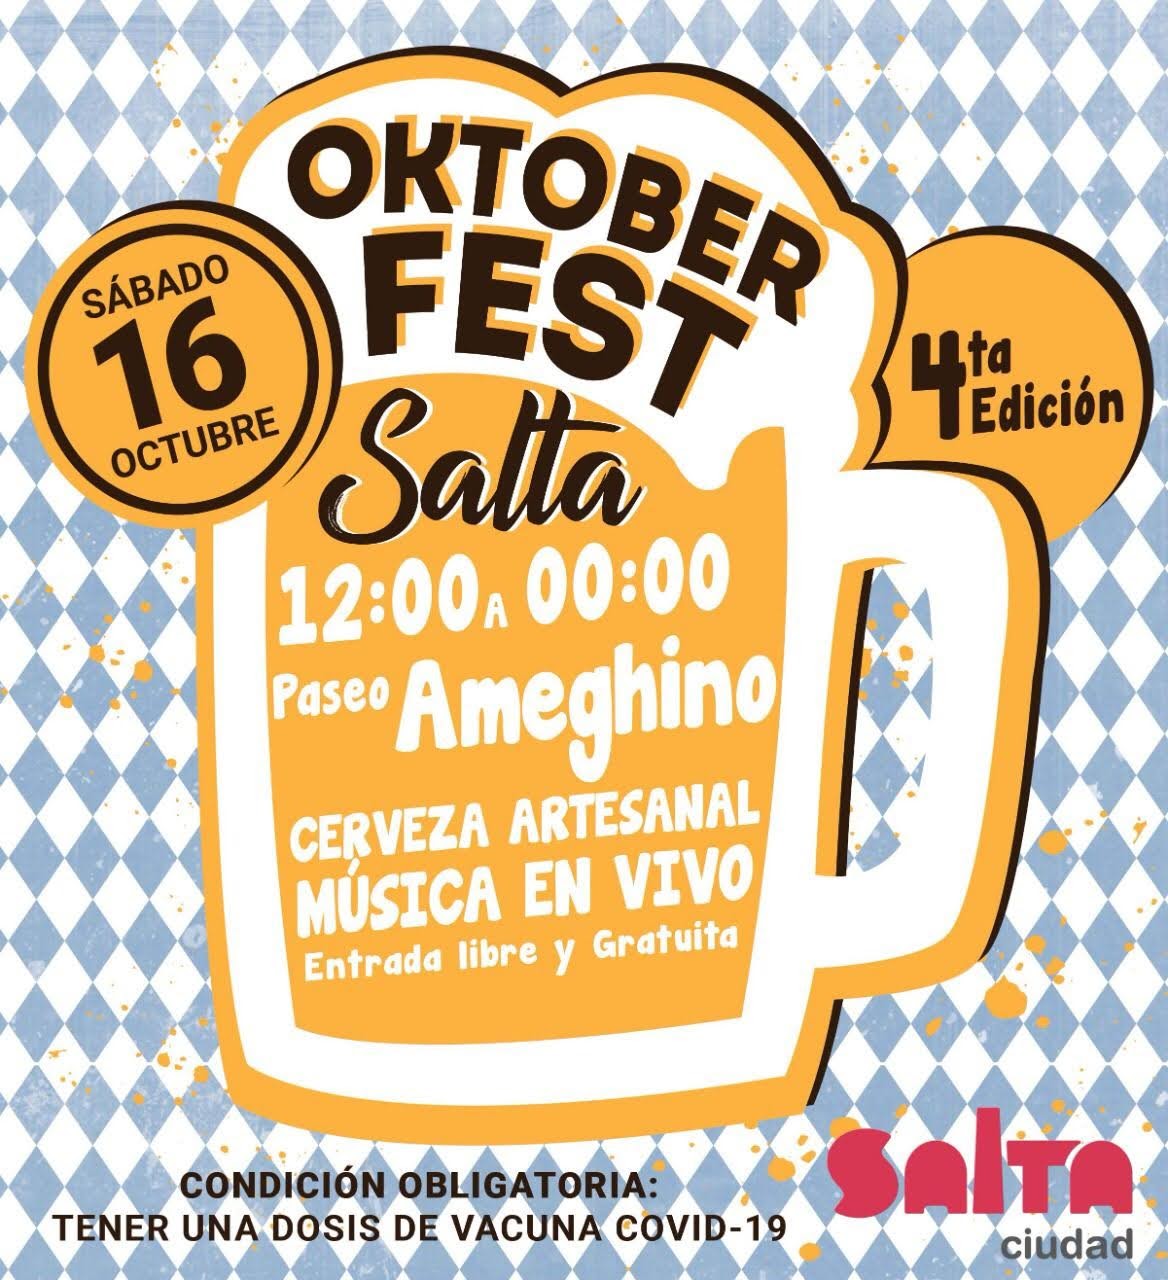 Este sábado se desarrollará la 4ta Edición del Oktoberfest Salta